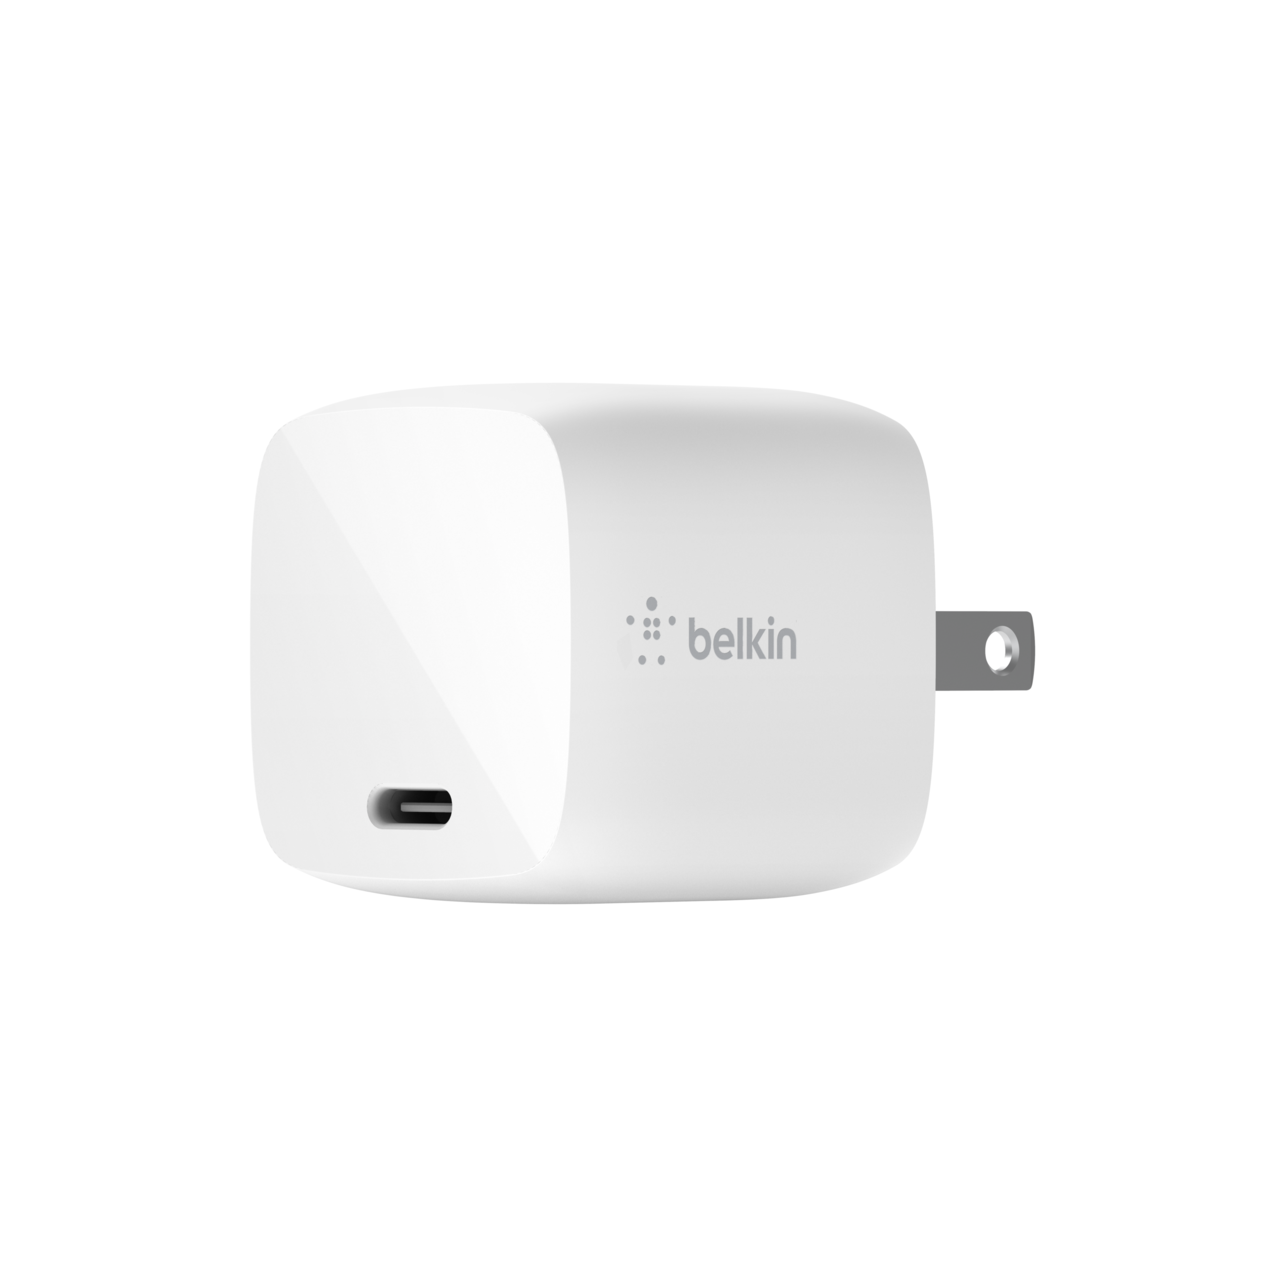 USB-C PD GaN Charger – Fast Charging | Belkin Belkin: US